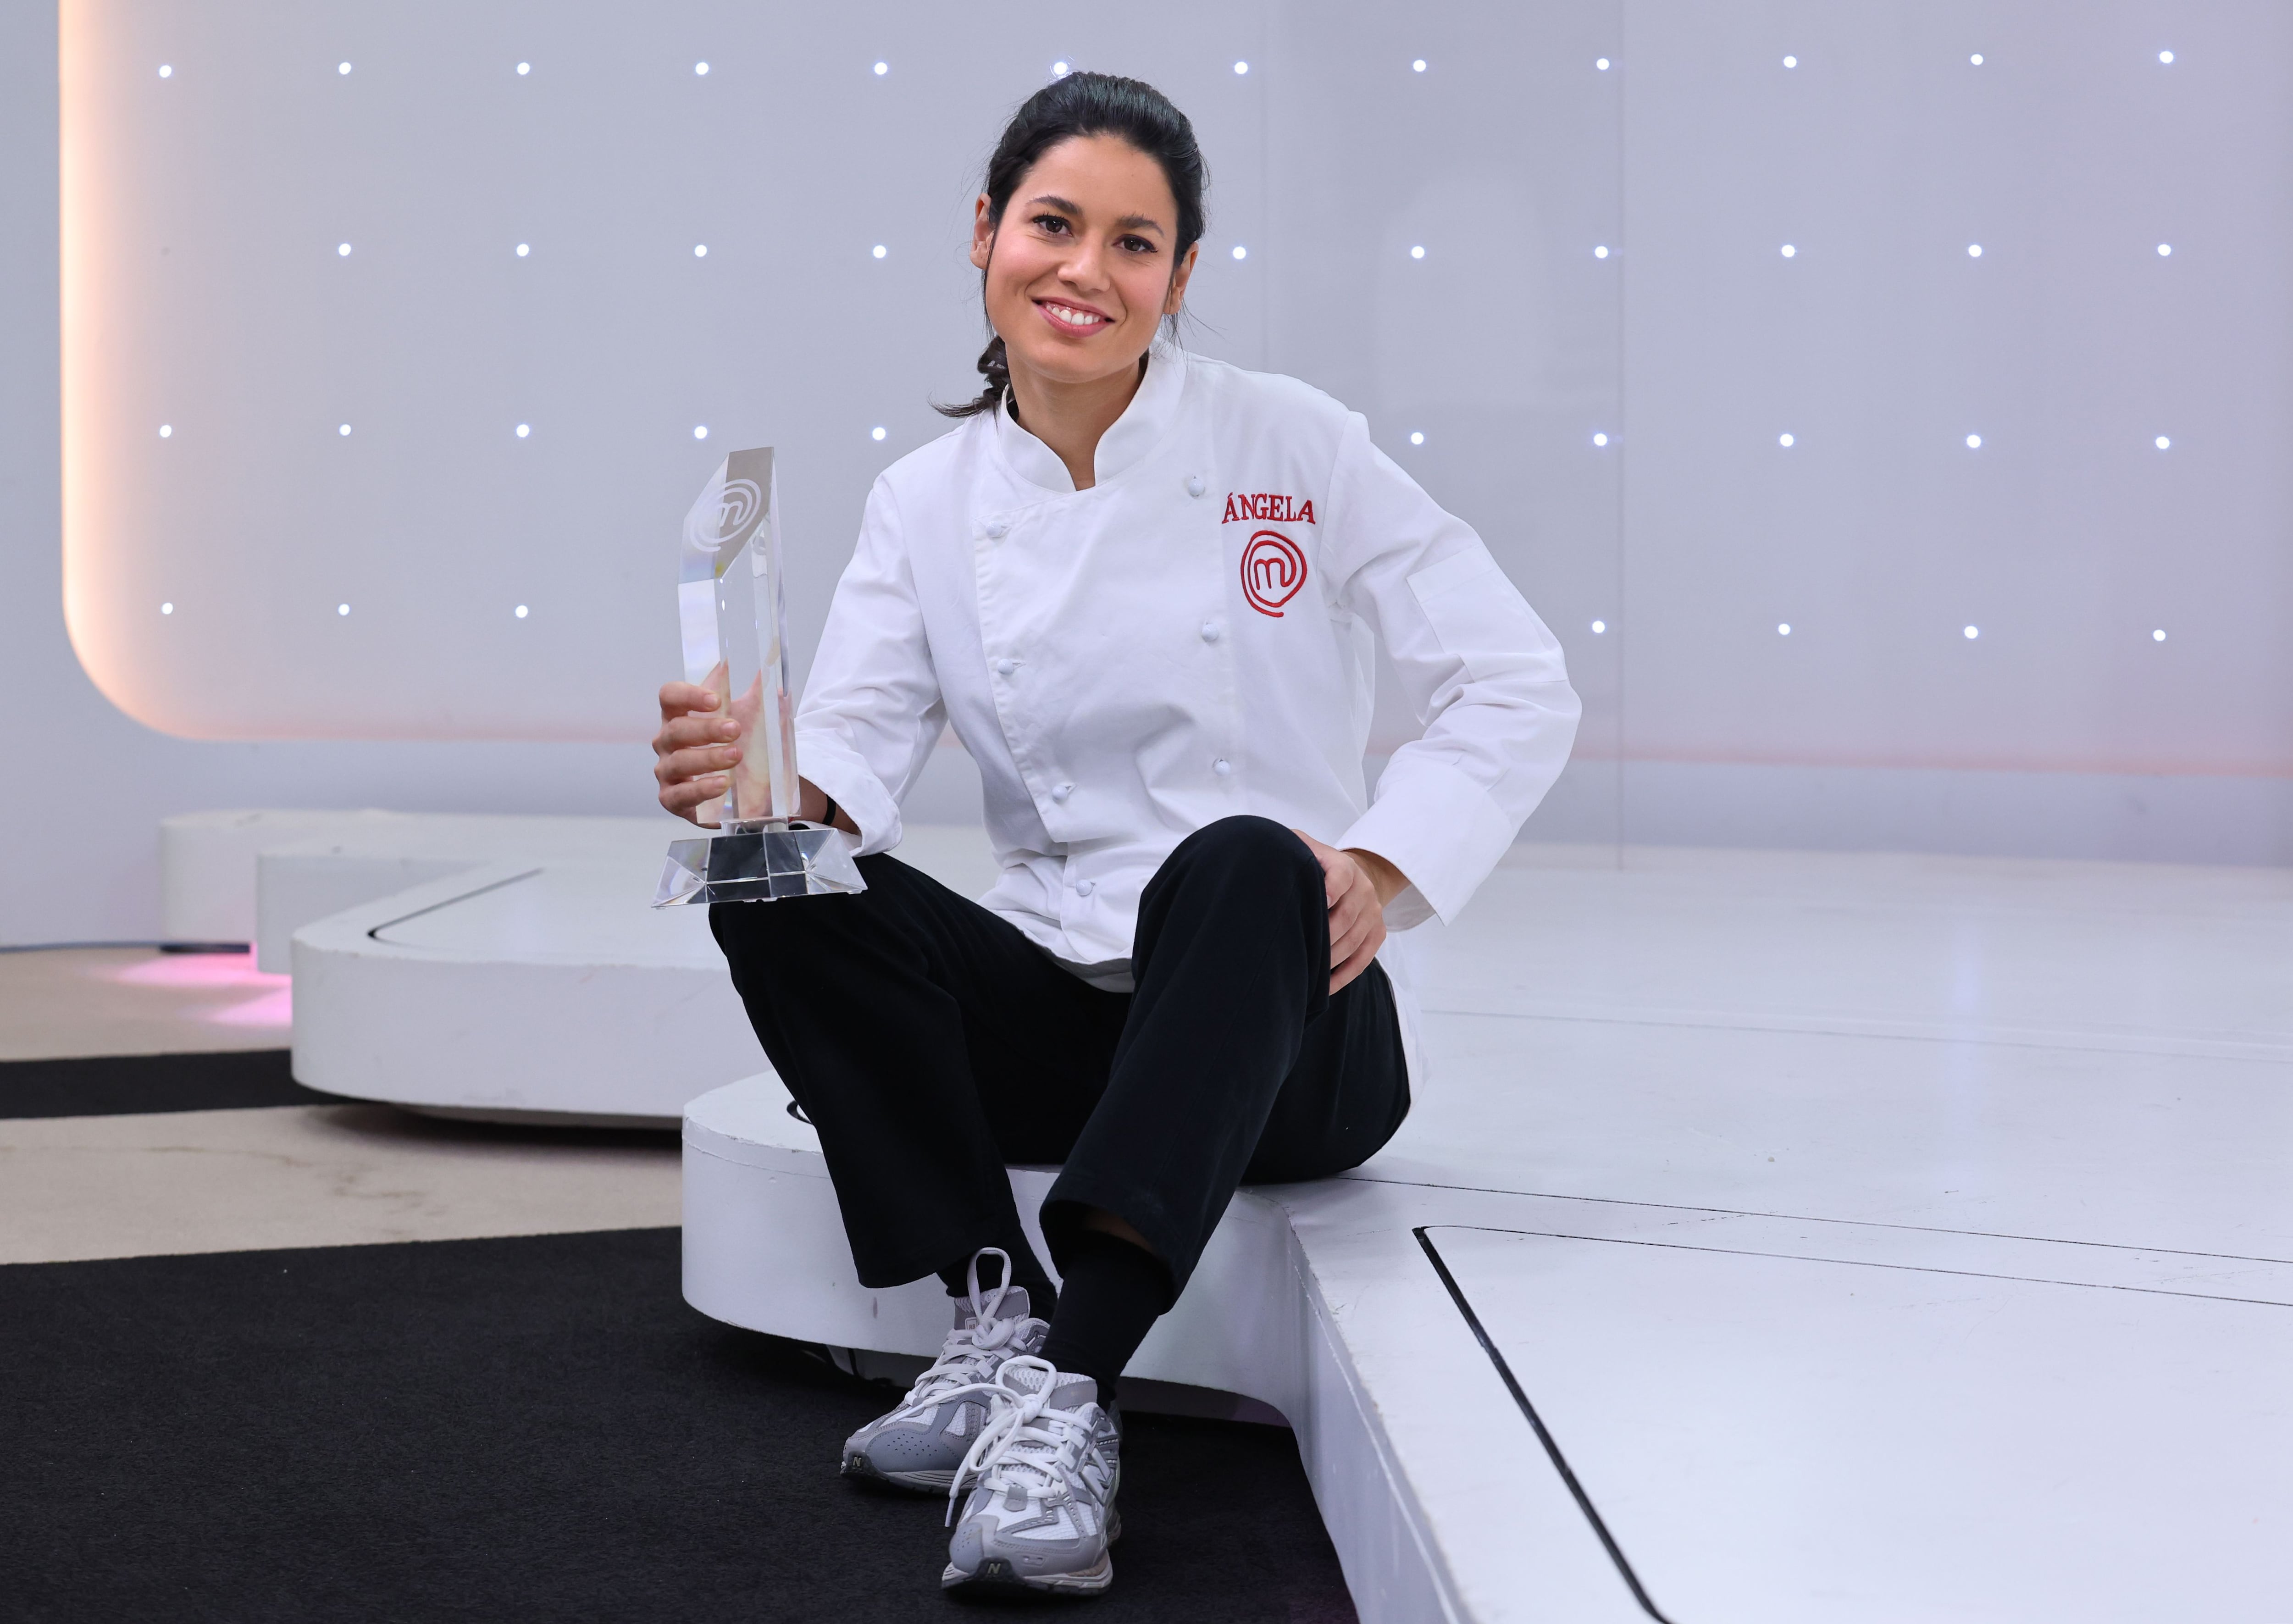 Ángela Gimeno, ganadora de ‘Masterchef 12′: “Quiero dedicarme a la cocina, pero que no me haga infeliz. No sirvo para encerrarme ocho horas”